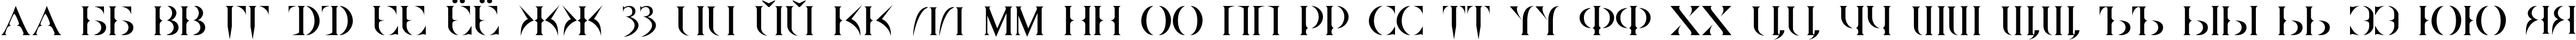 Пример написания русского алфавита шрифтом Quake Cyr